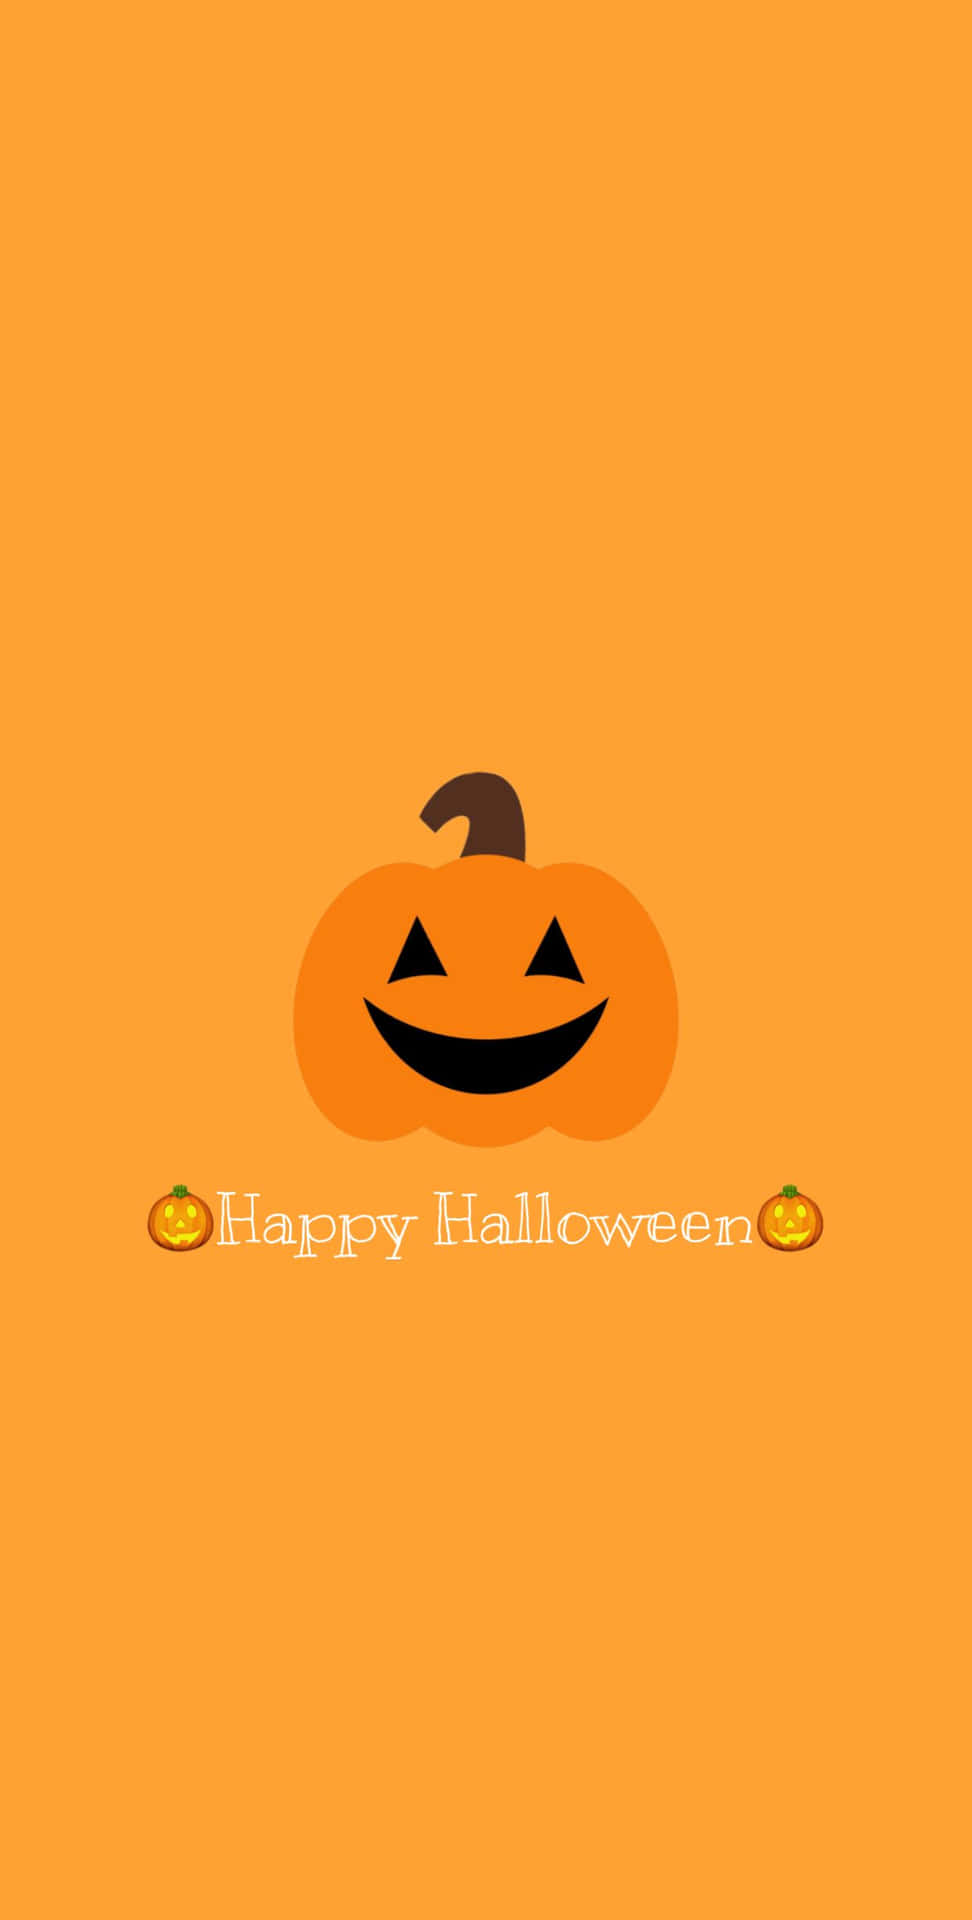 Download Orange Halloween Smiling Jack-o'-lantern Wallpaper ...